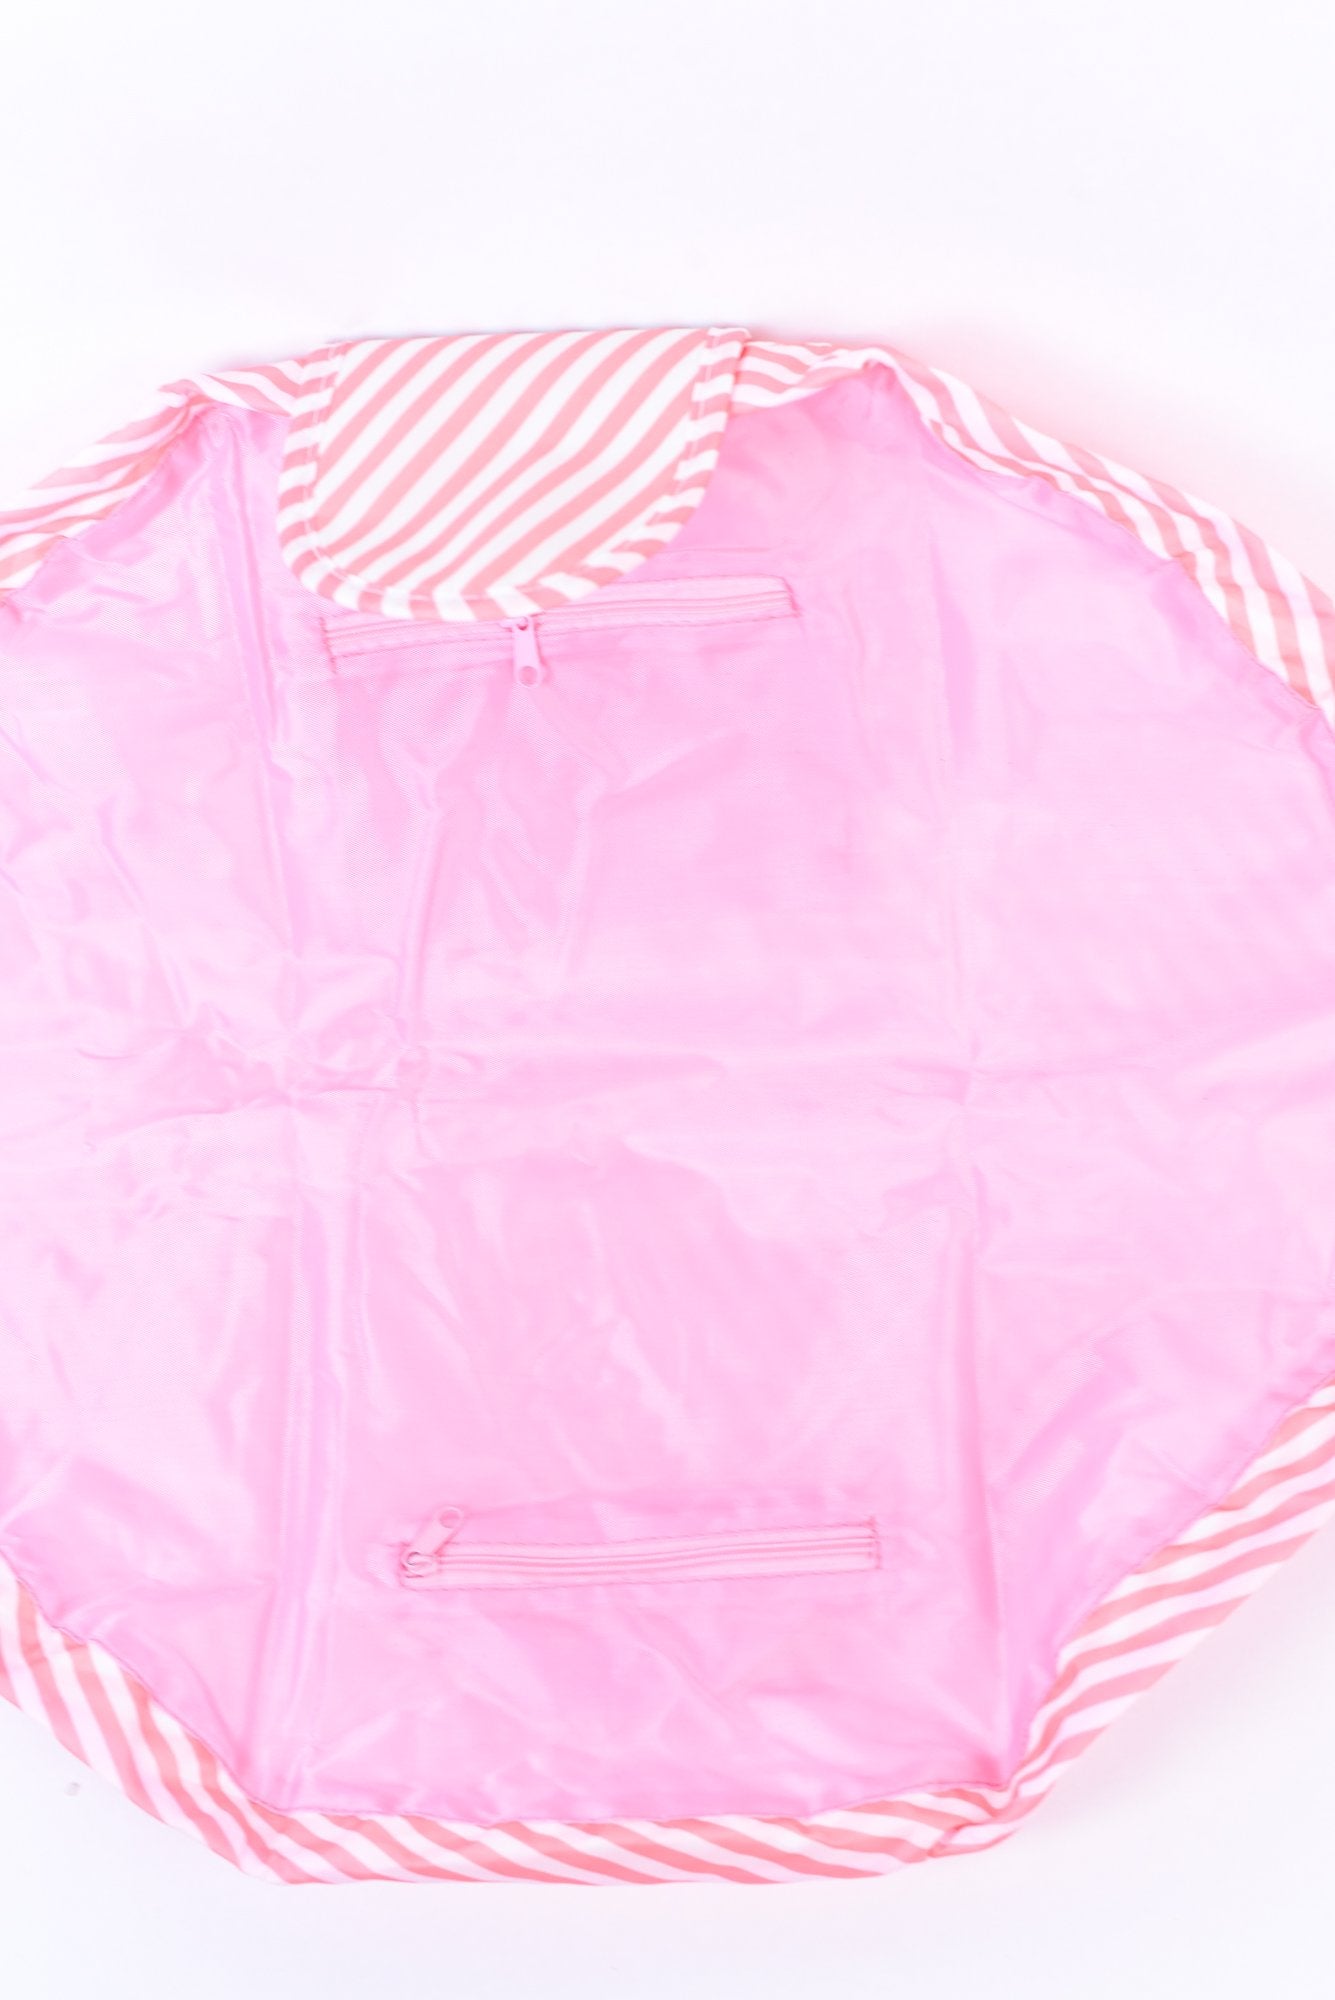 Pink Striped Drawstring Makeup Bag - MUB957PK